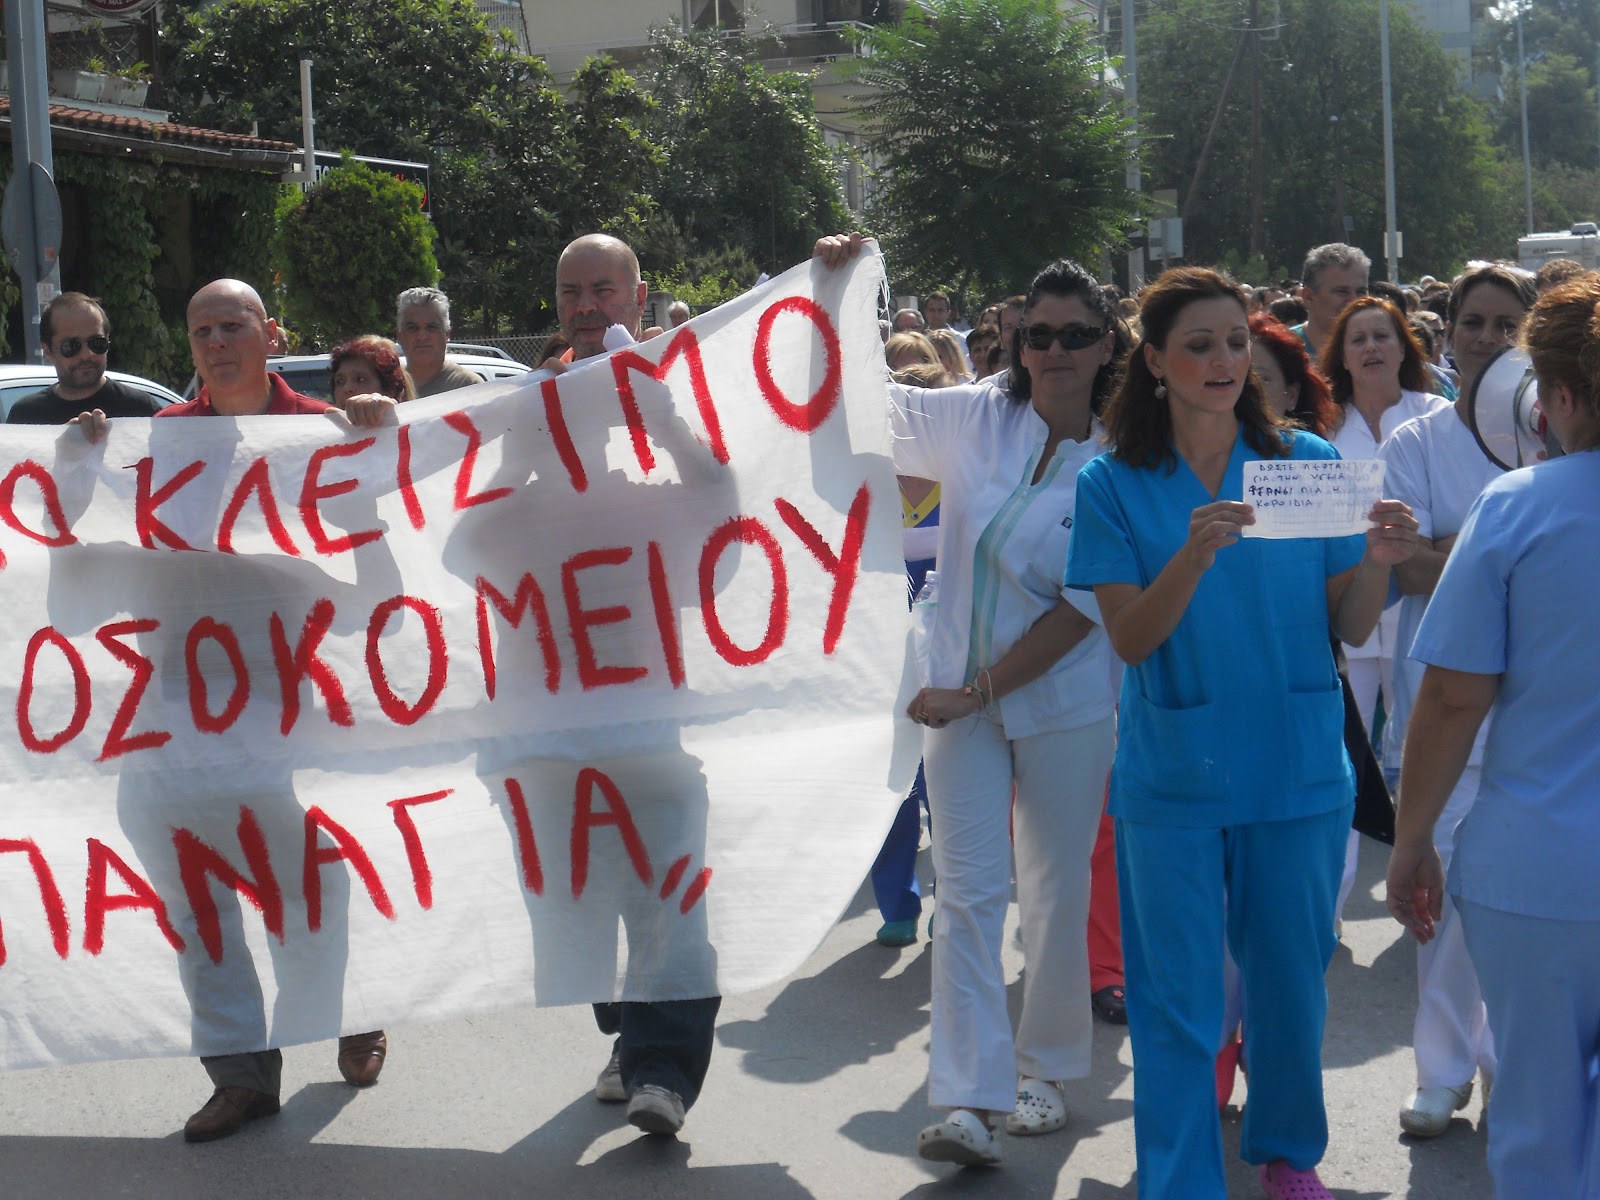 Σε νέα συγκέντρωση διαμαρτυρίας καλούν αύριο οι εργαζόμενοι στο νοσοκομείο “Παναγία”